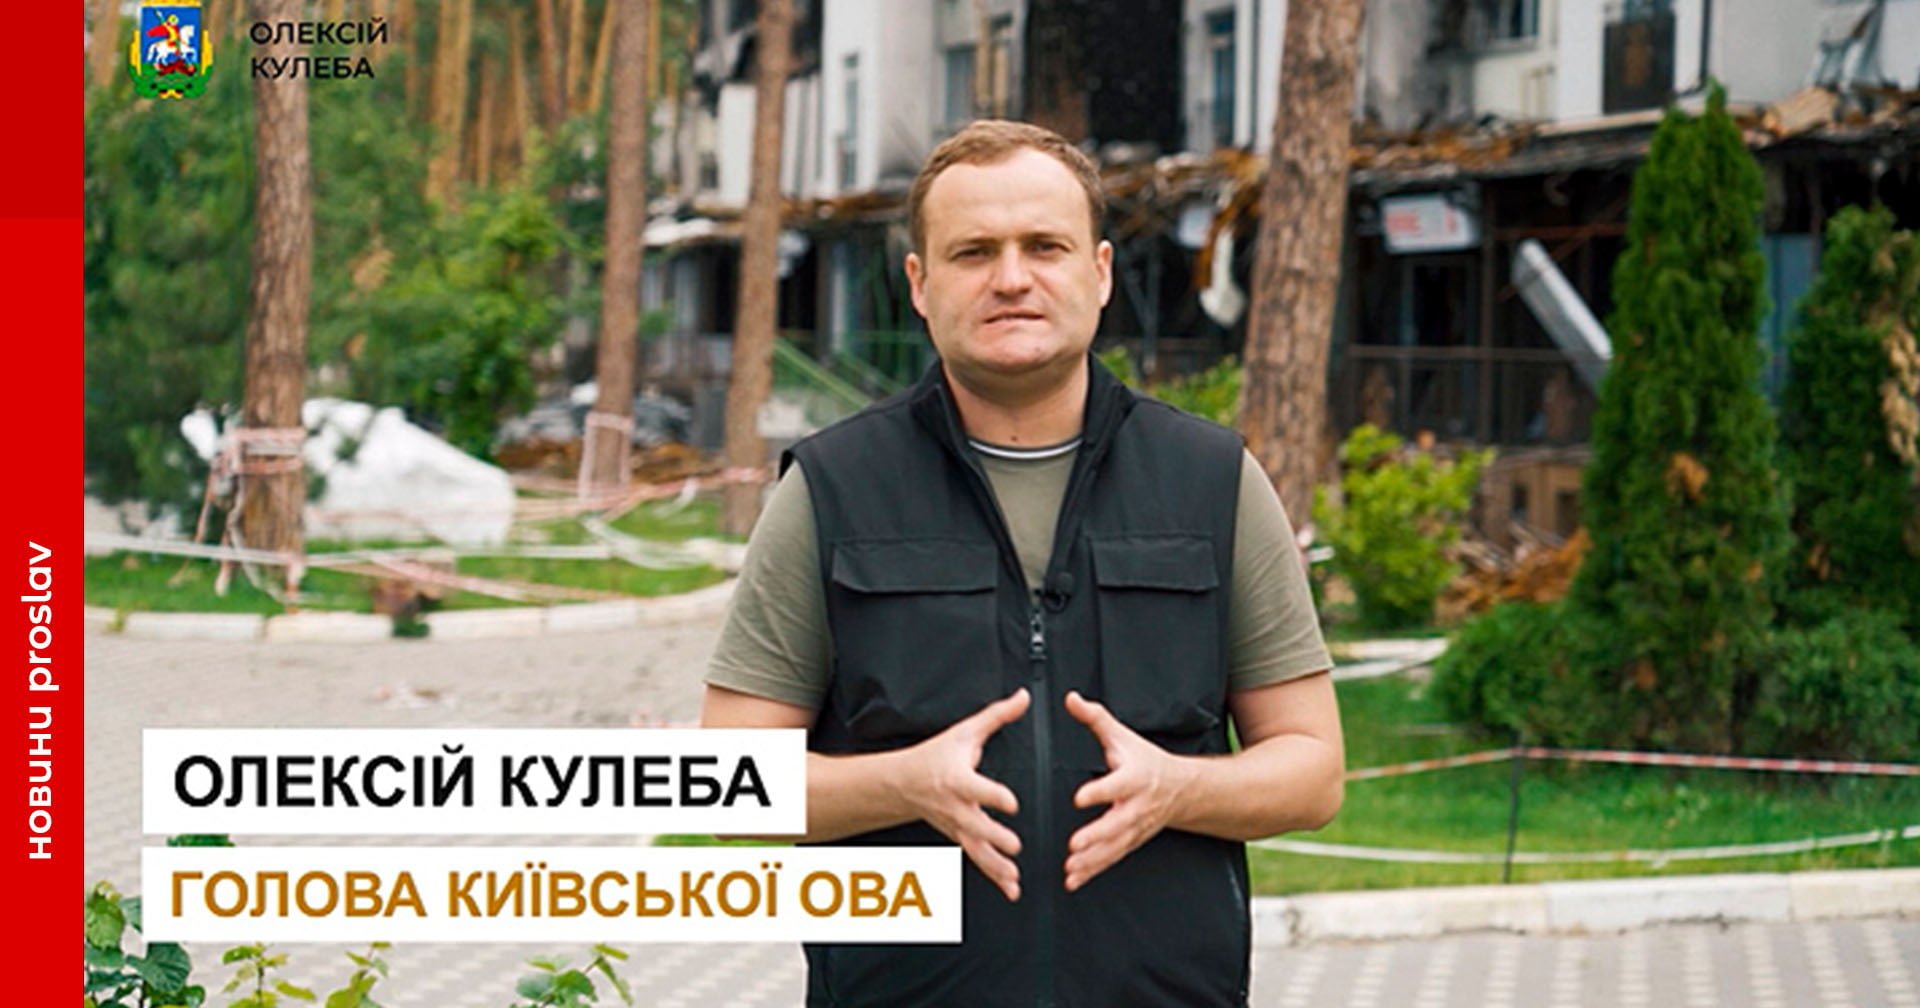 «Ніхто нікуди не їде»: Кулеба спростував інформацію про евакуацію мешканців Київщини через відключення світла